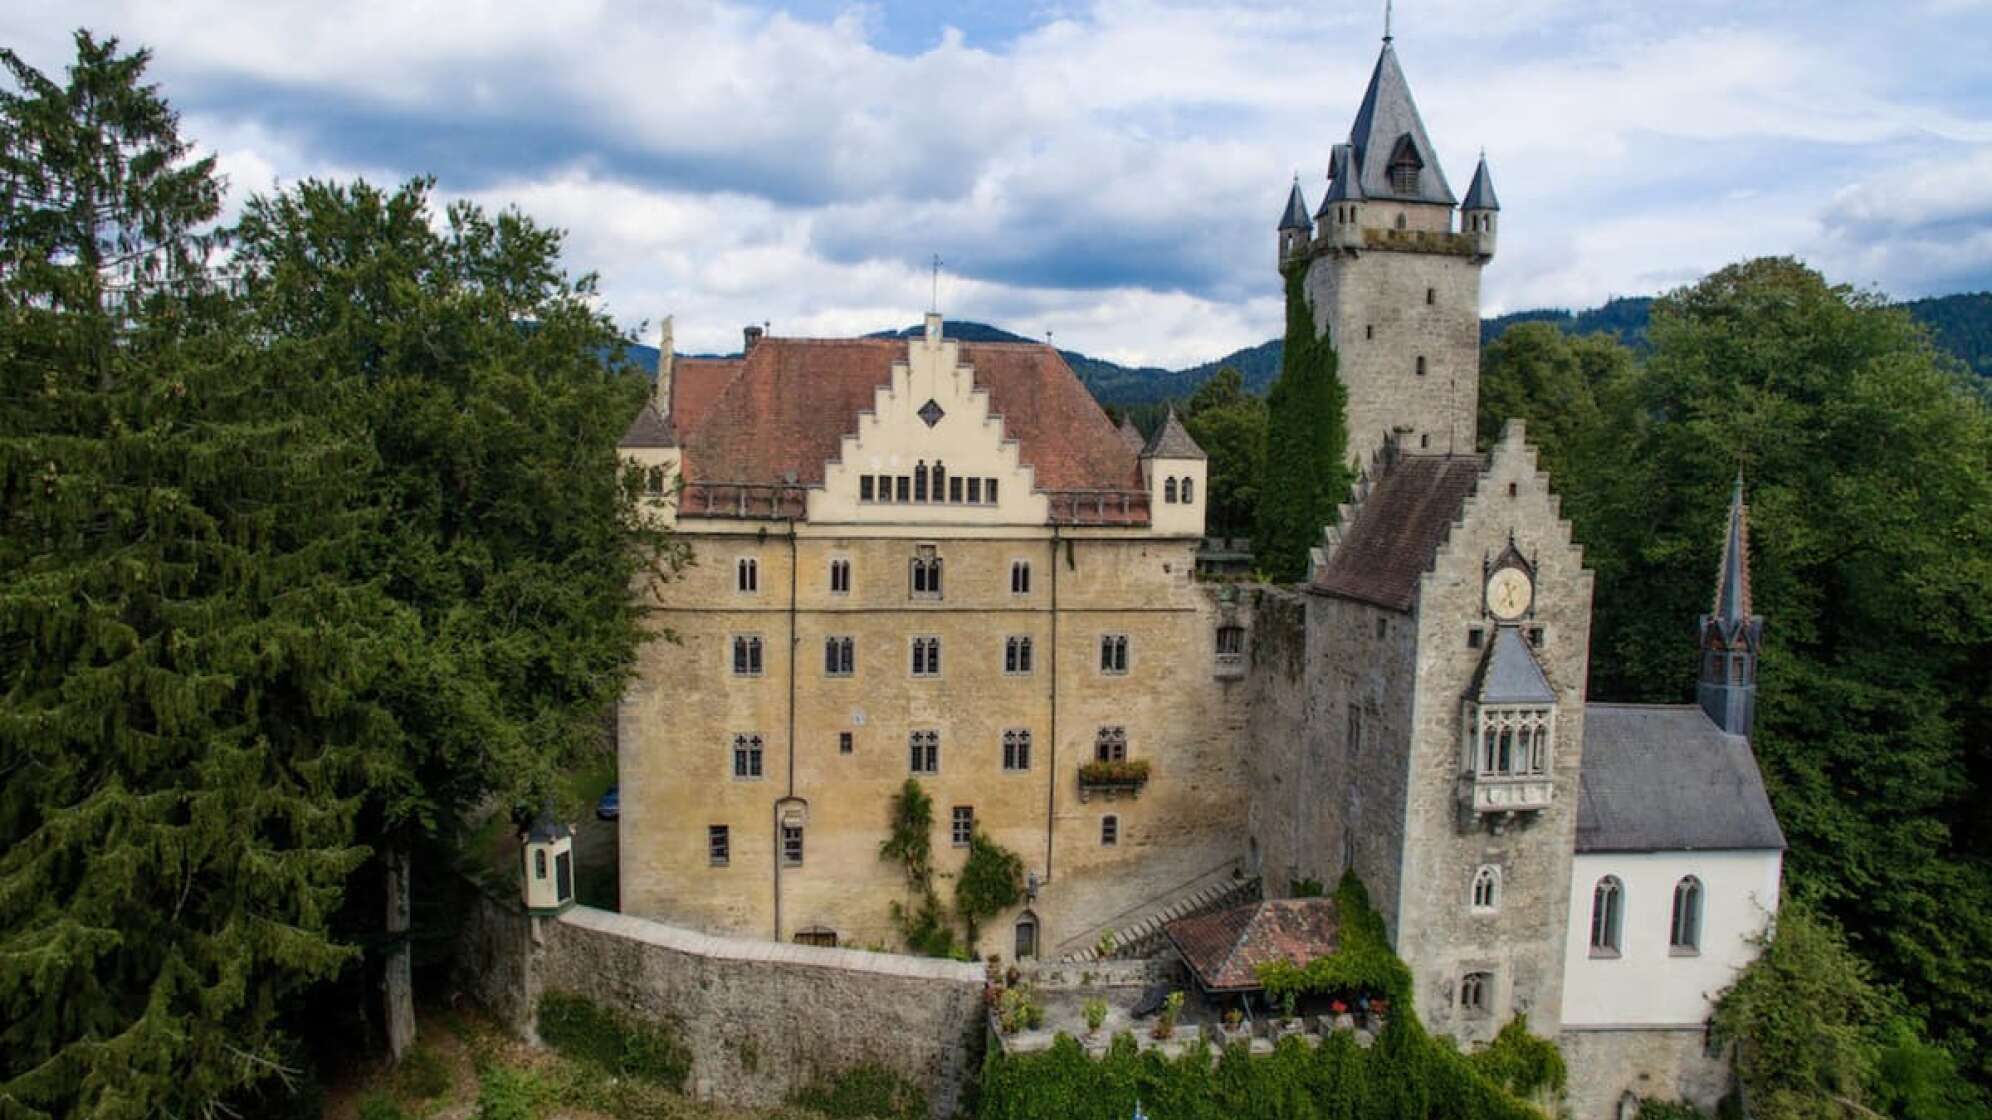 Schloss Egg in Bernried